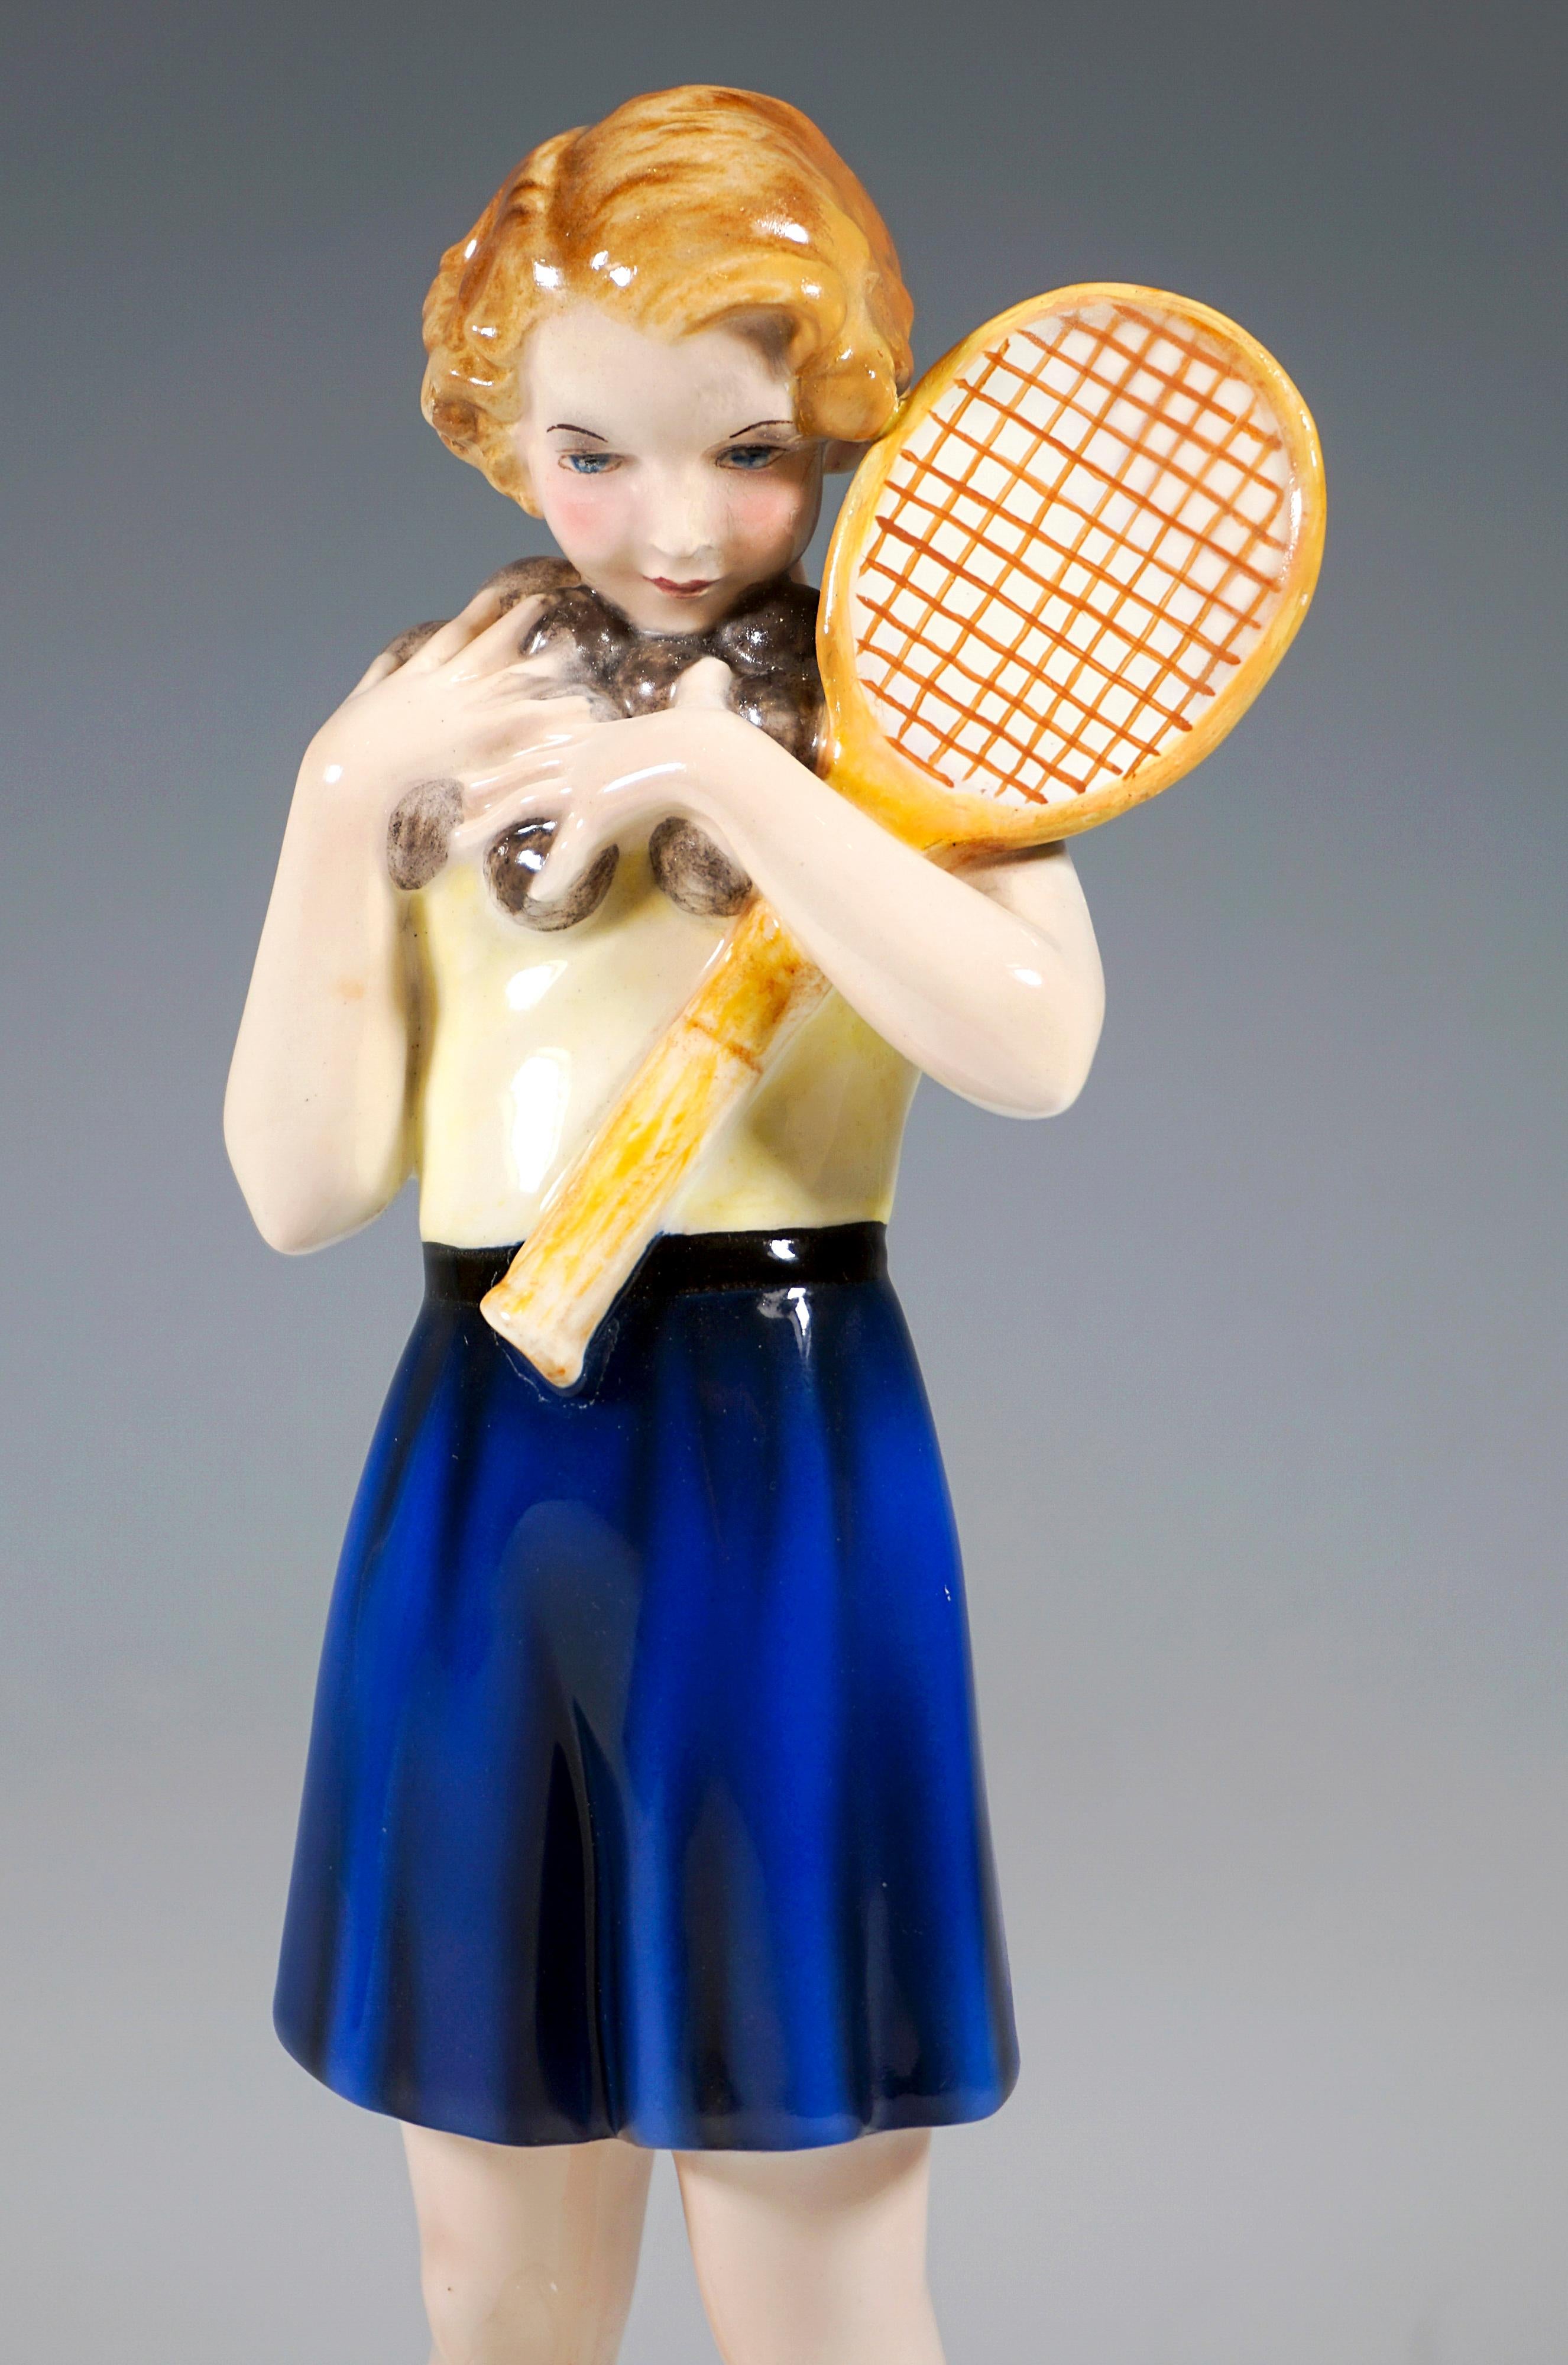 Austrian Goldscheider Art Déco Figurine 'Tennis' Girl Holding Balls, Dakon, Vienna c 1939 For Sale